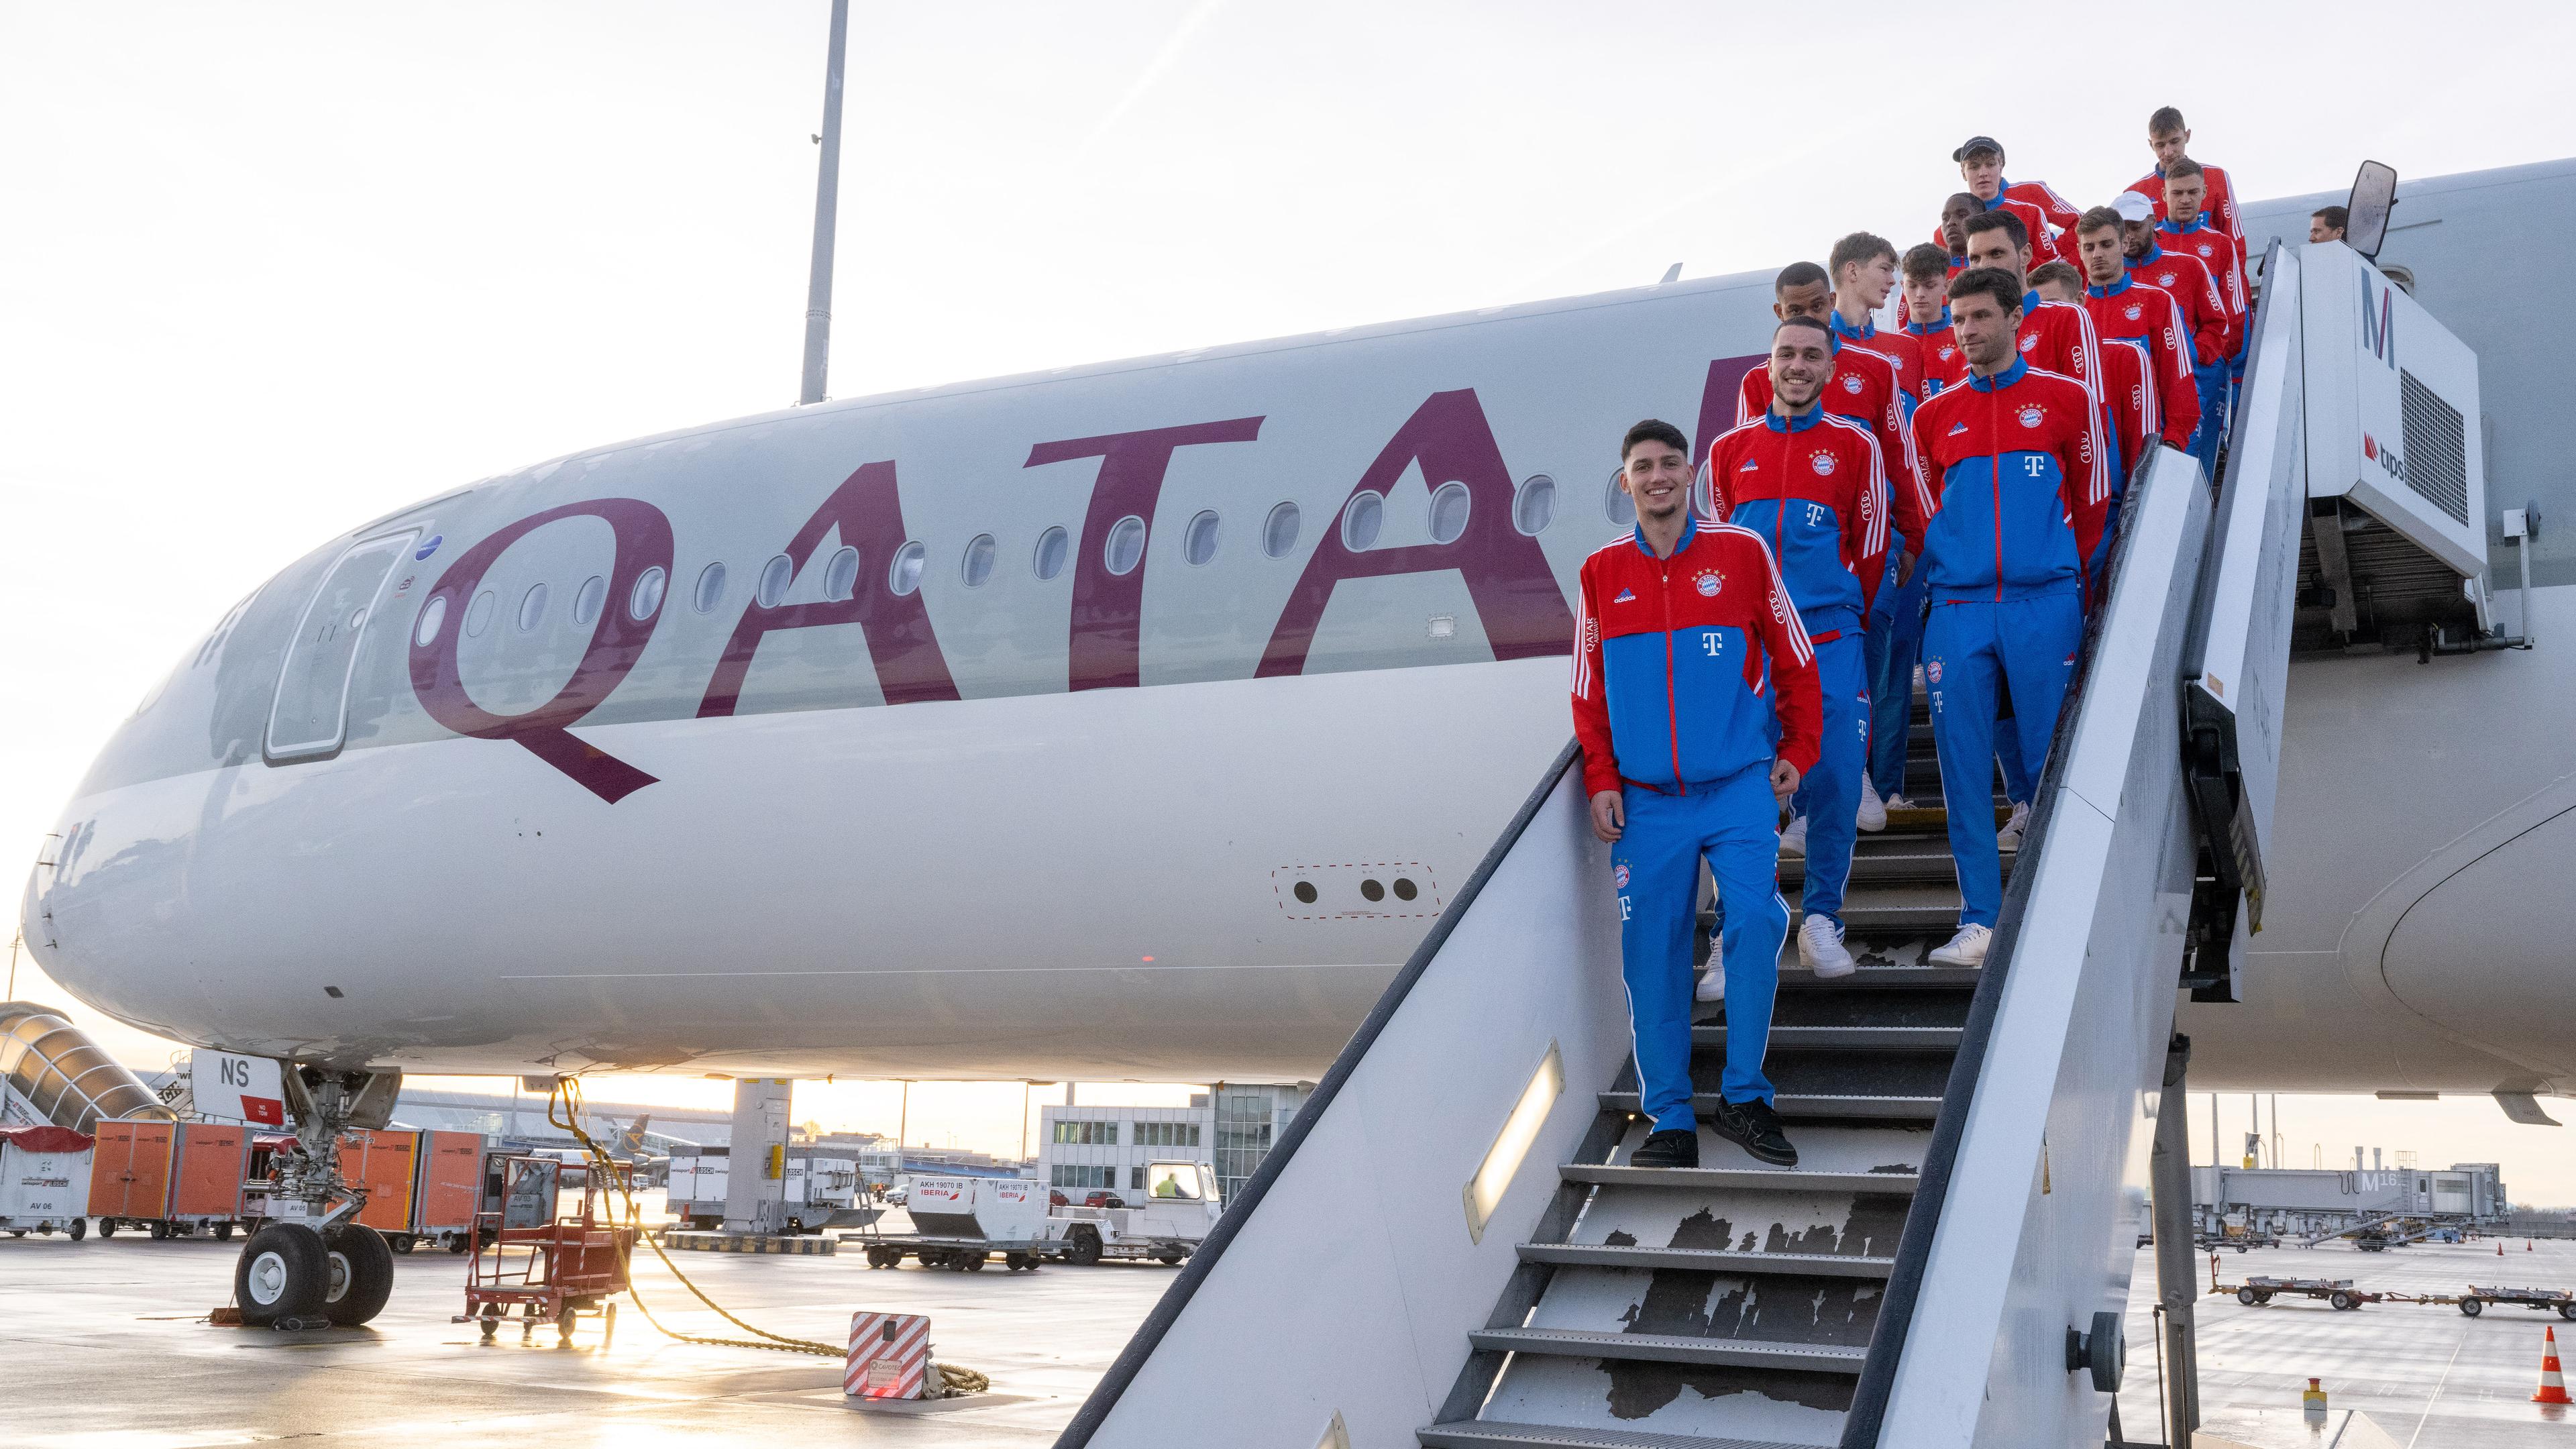 Die Spieler des deutschen Fußball-Bundesligisten FC Bayern München stehen auf der Treppe eines Flugzeugs der Fluglinie Qatar Airways, aufgenommen am 06.01.2023